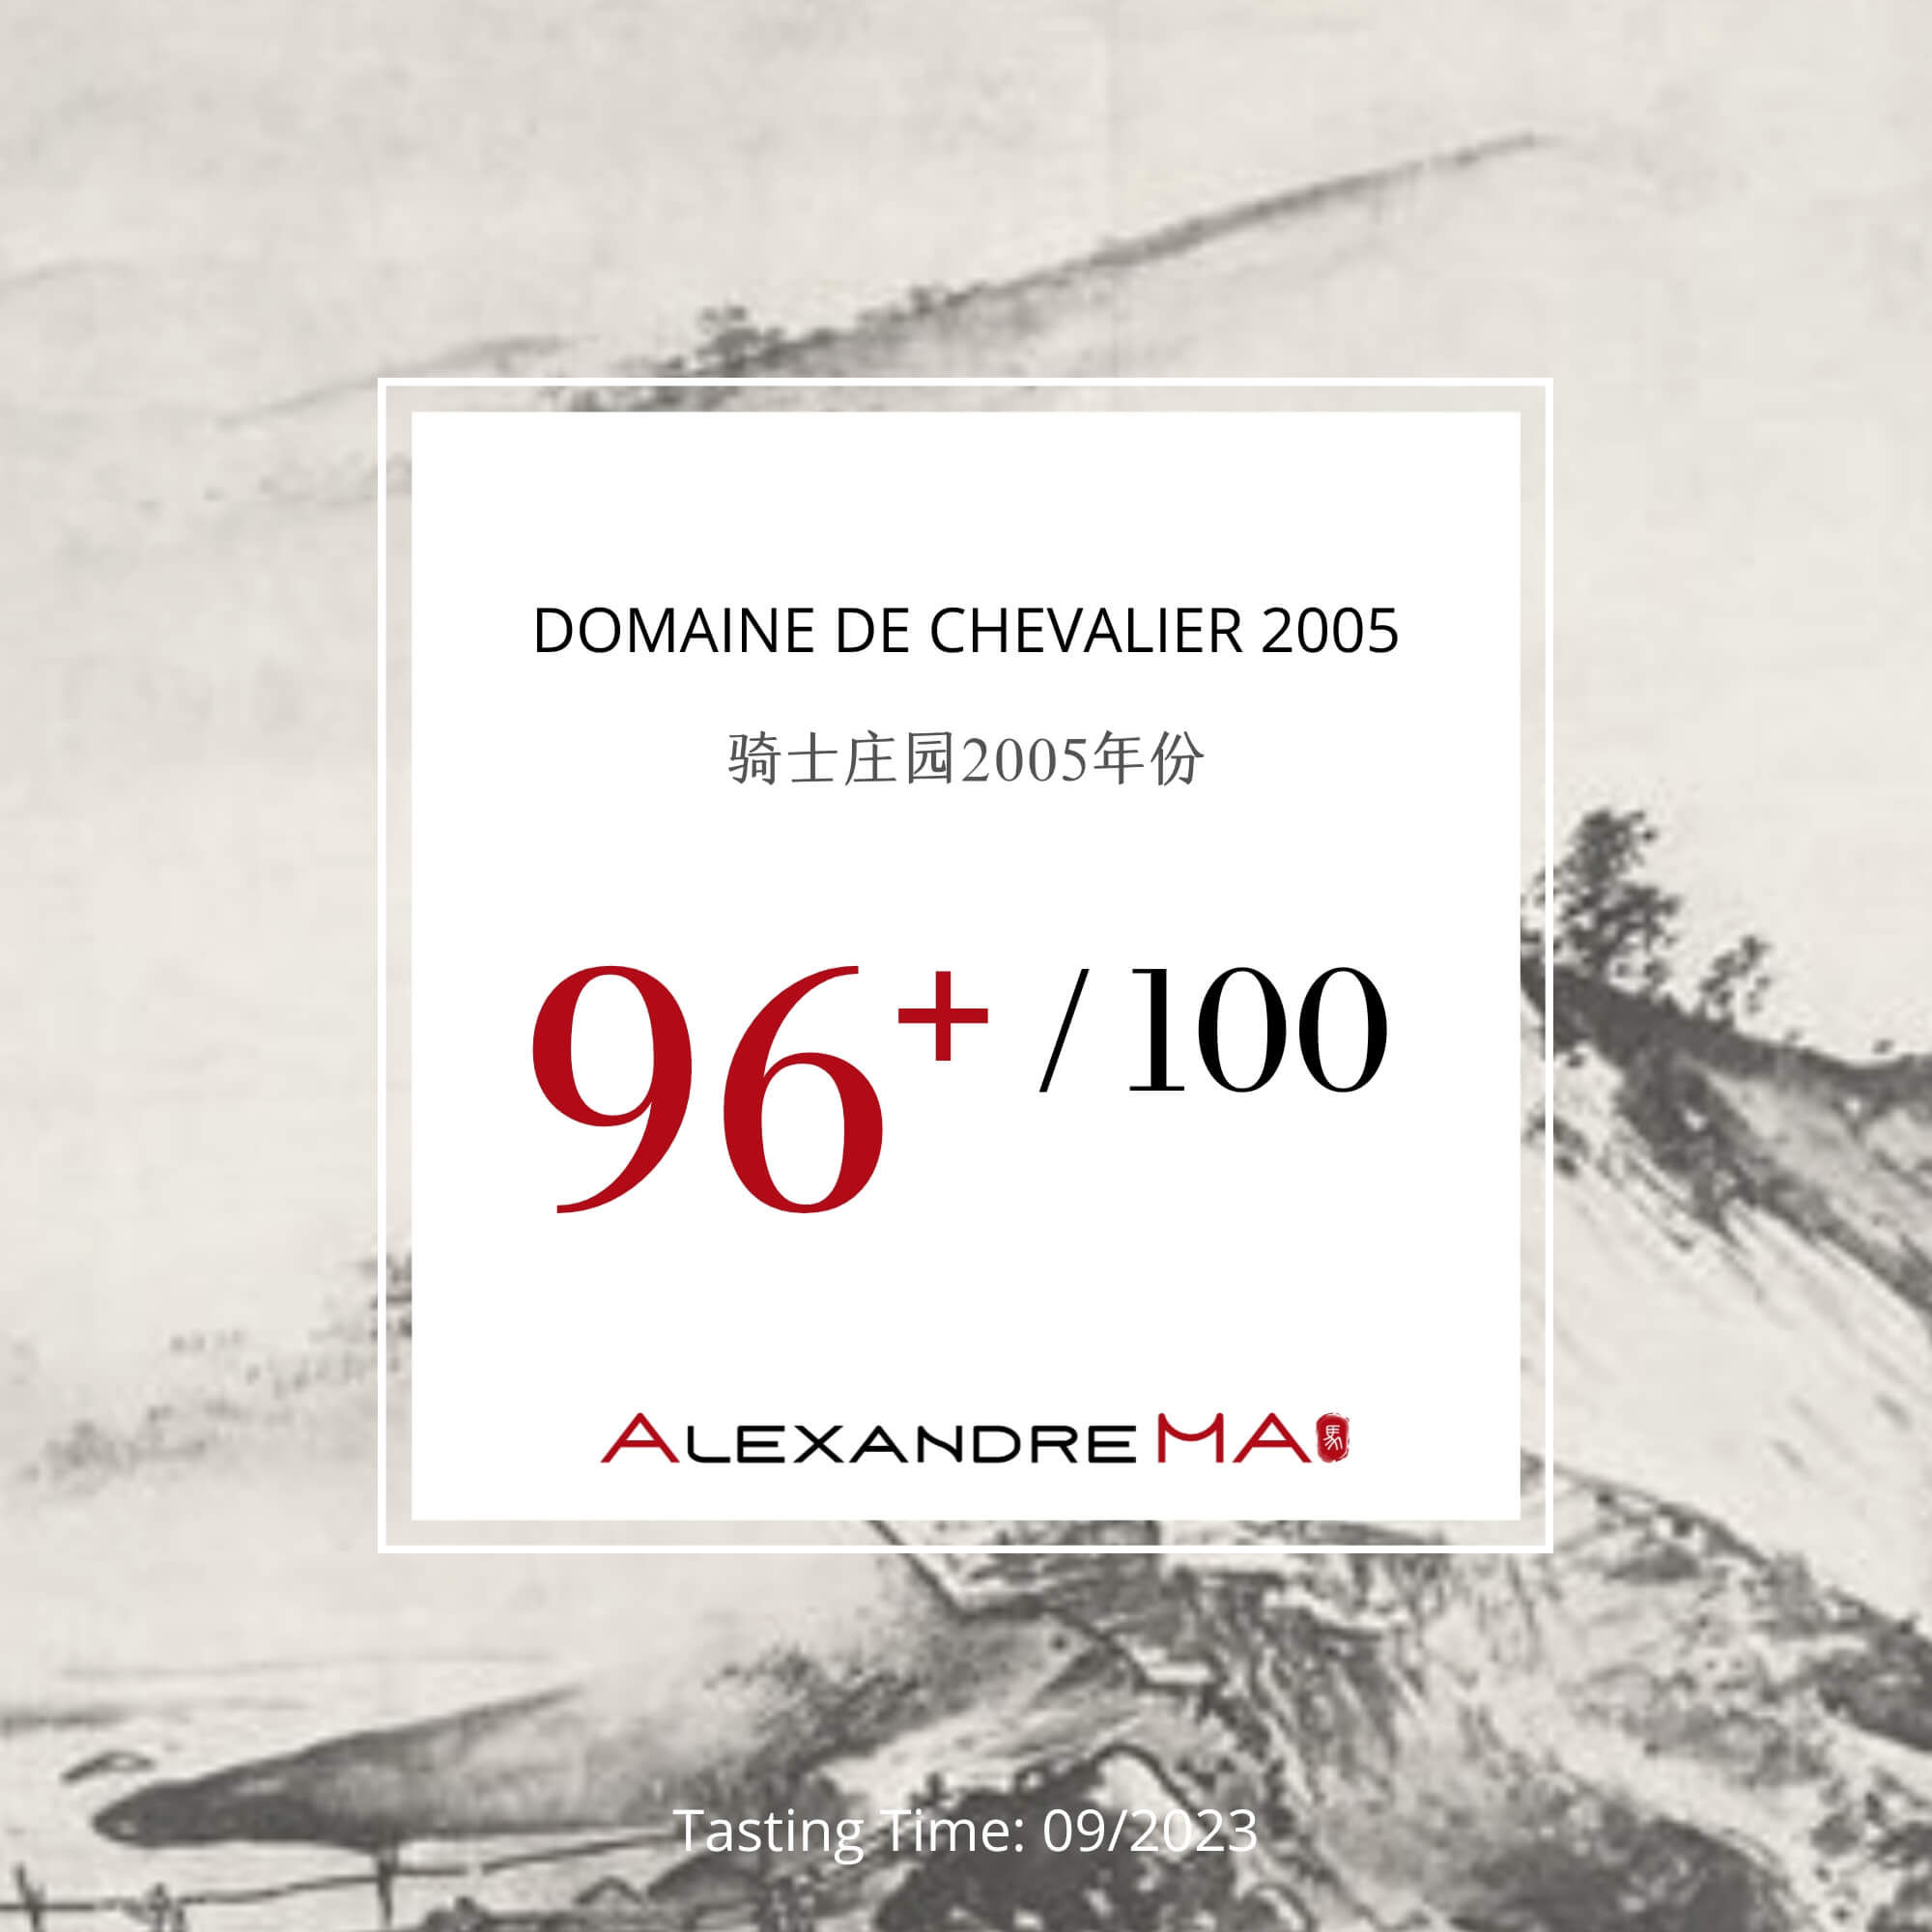 Domaine de Chevalier 2005 - Alexandre MA